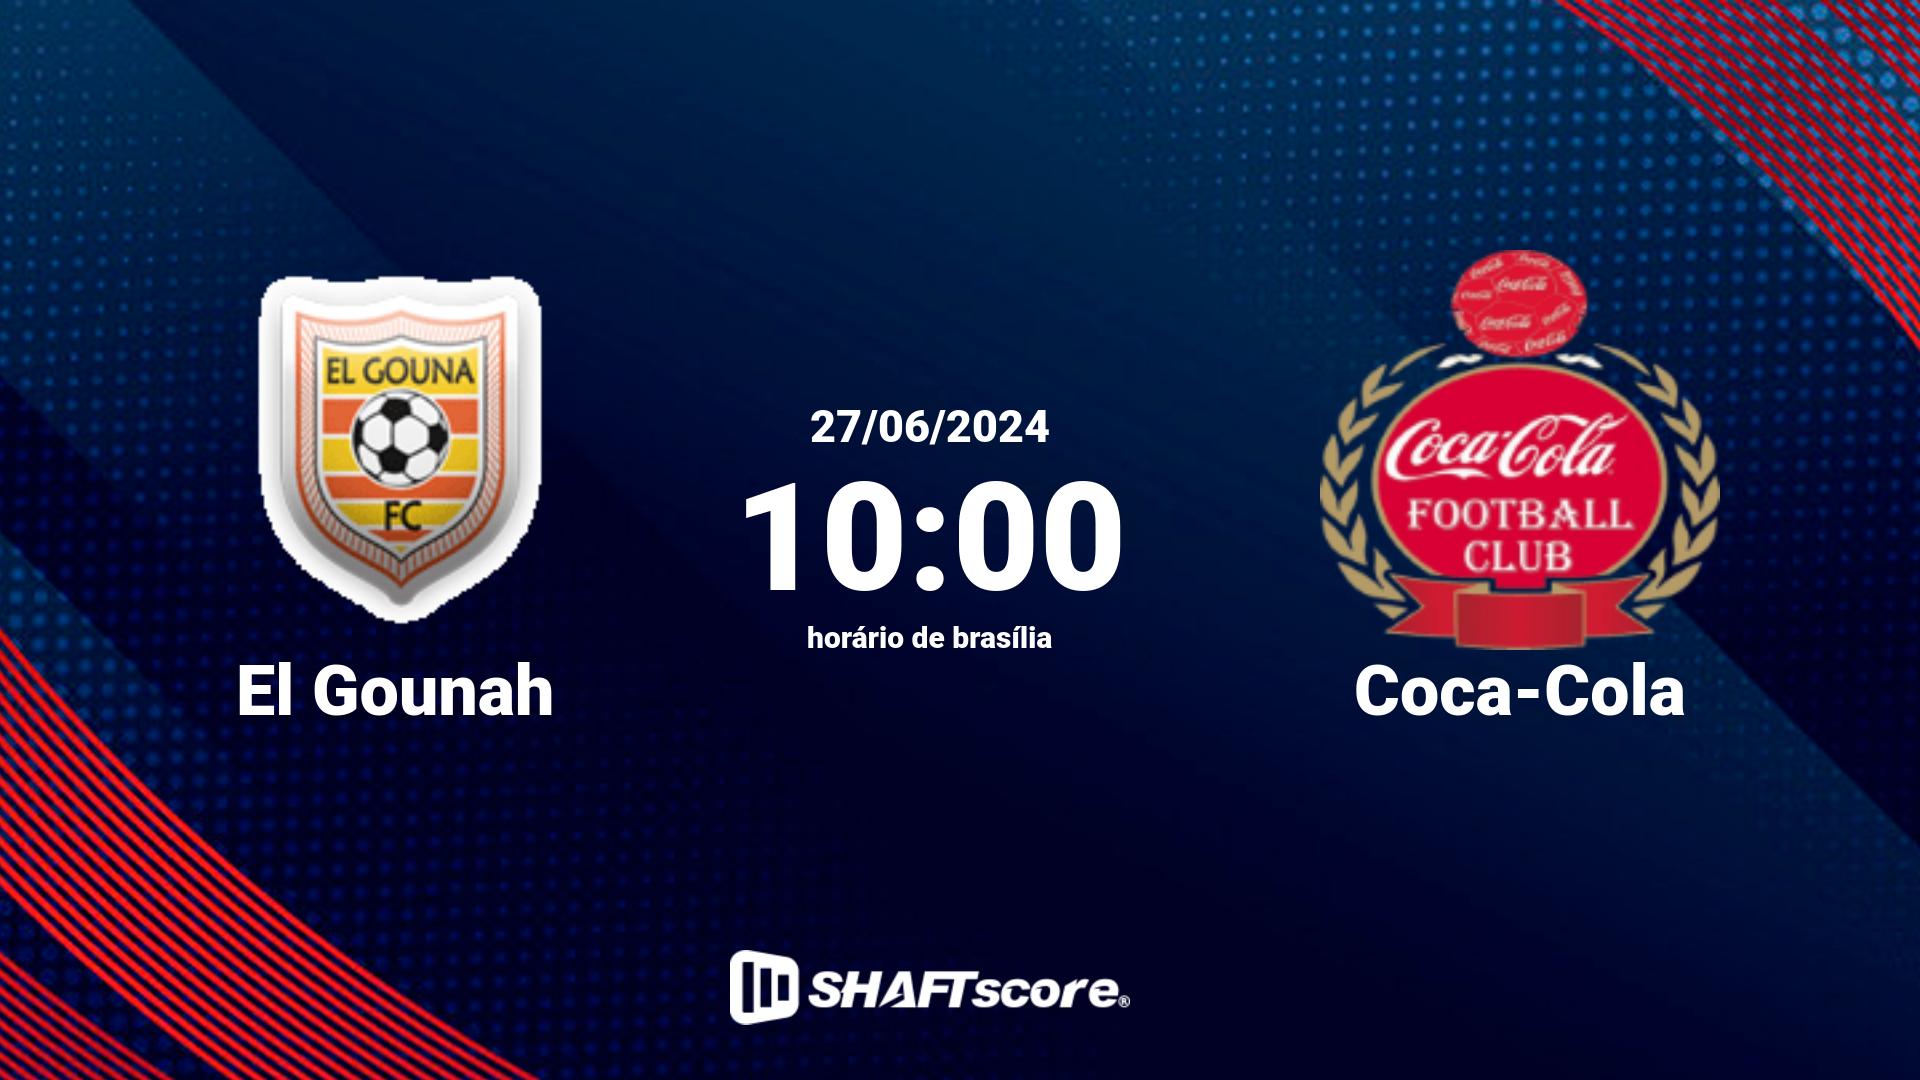 Estatísticas do jogo El Gounah vs Coca-Cola 27.06 10:00